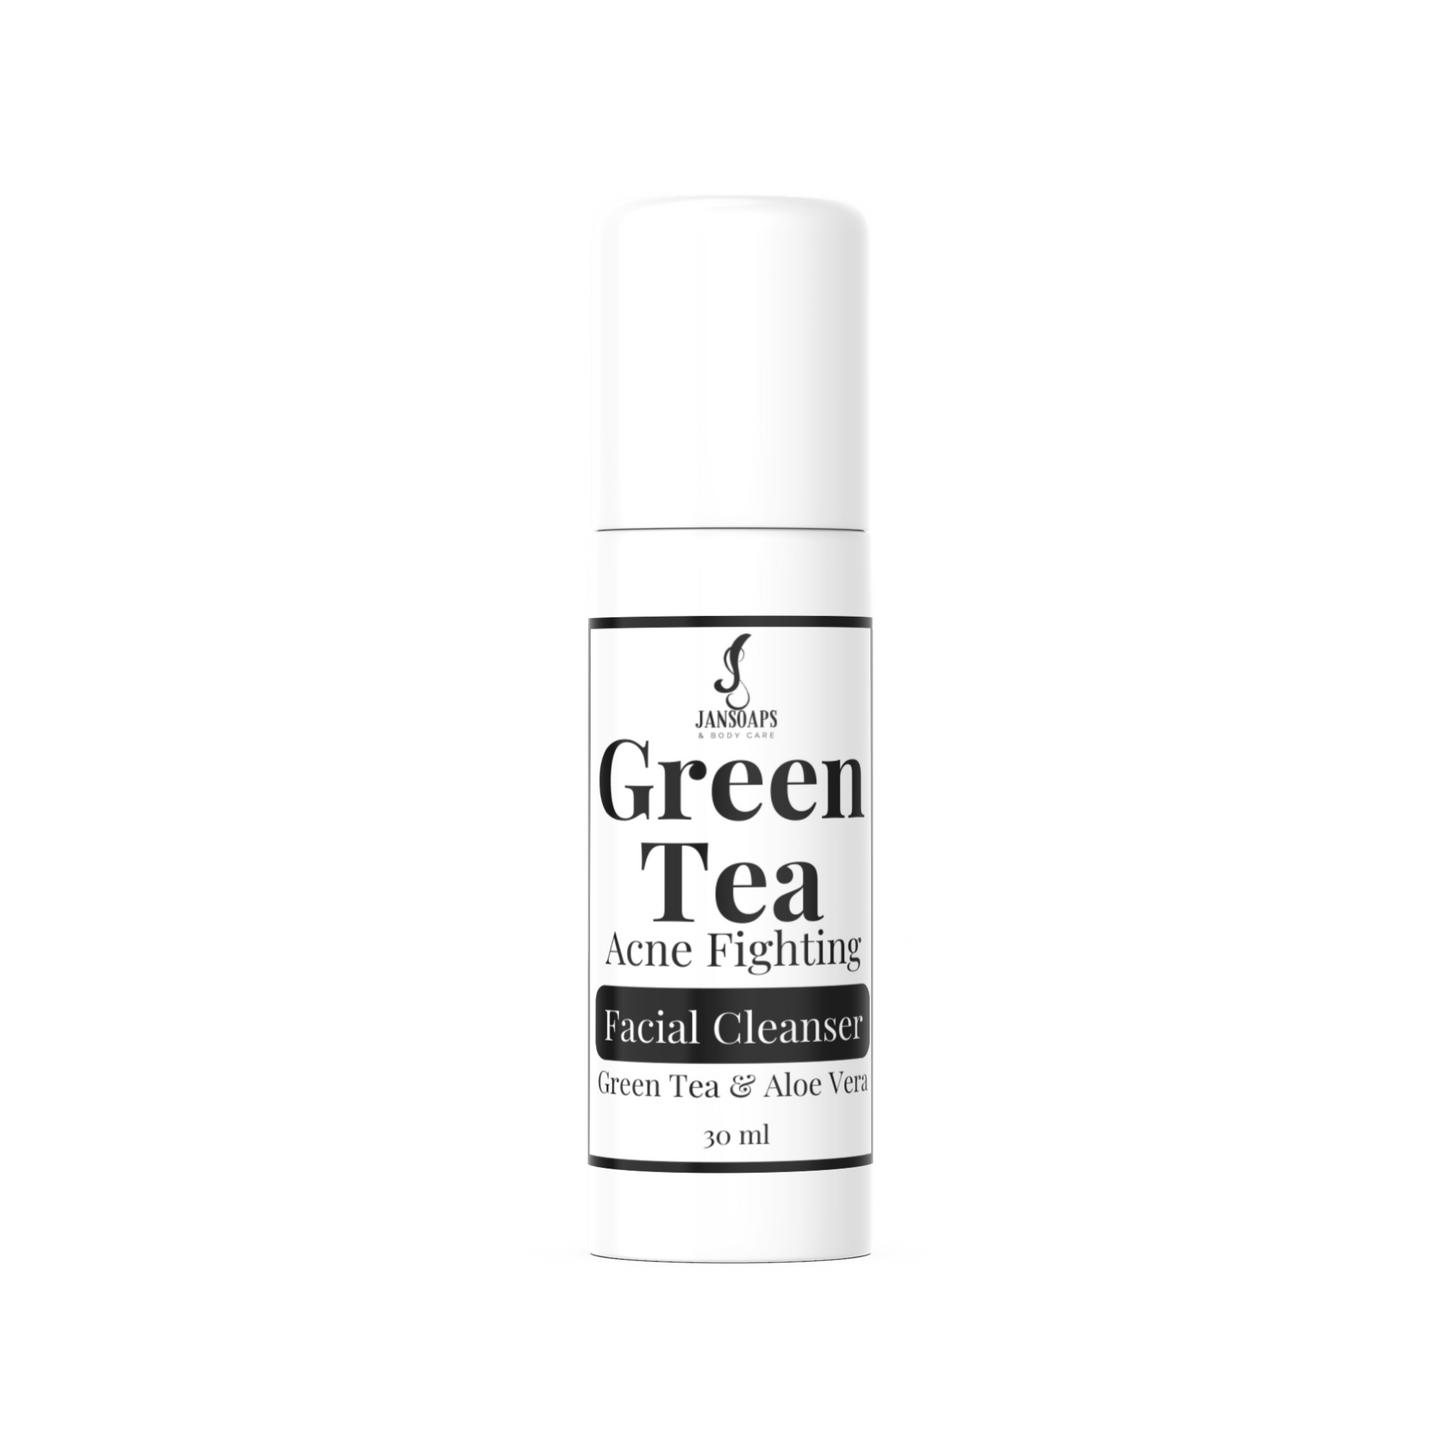 Green Tea Collection